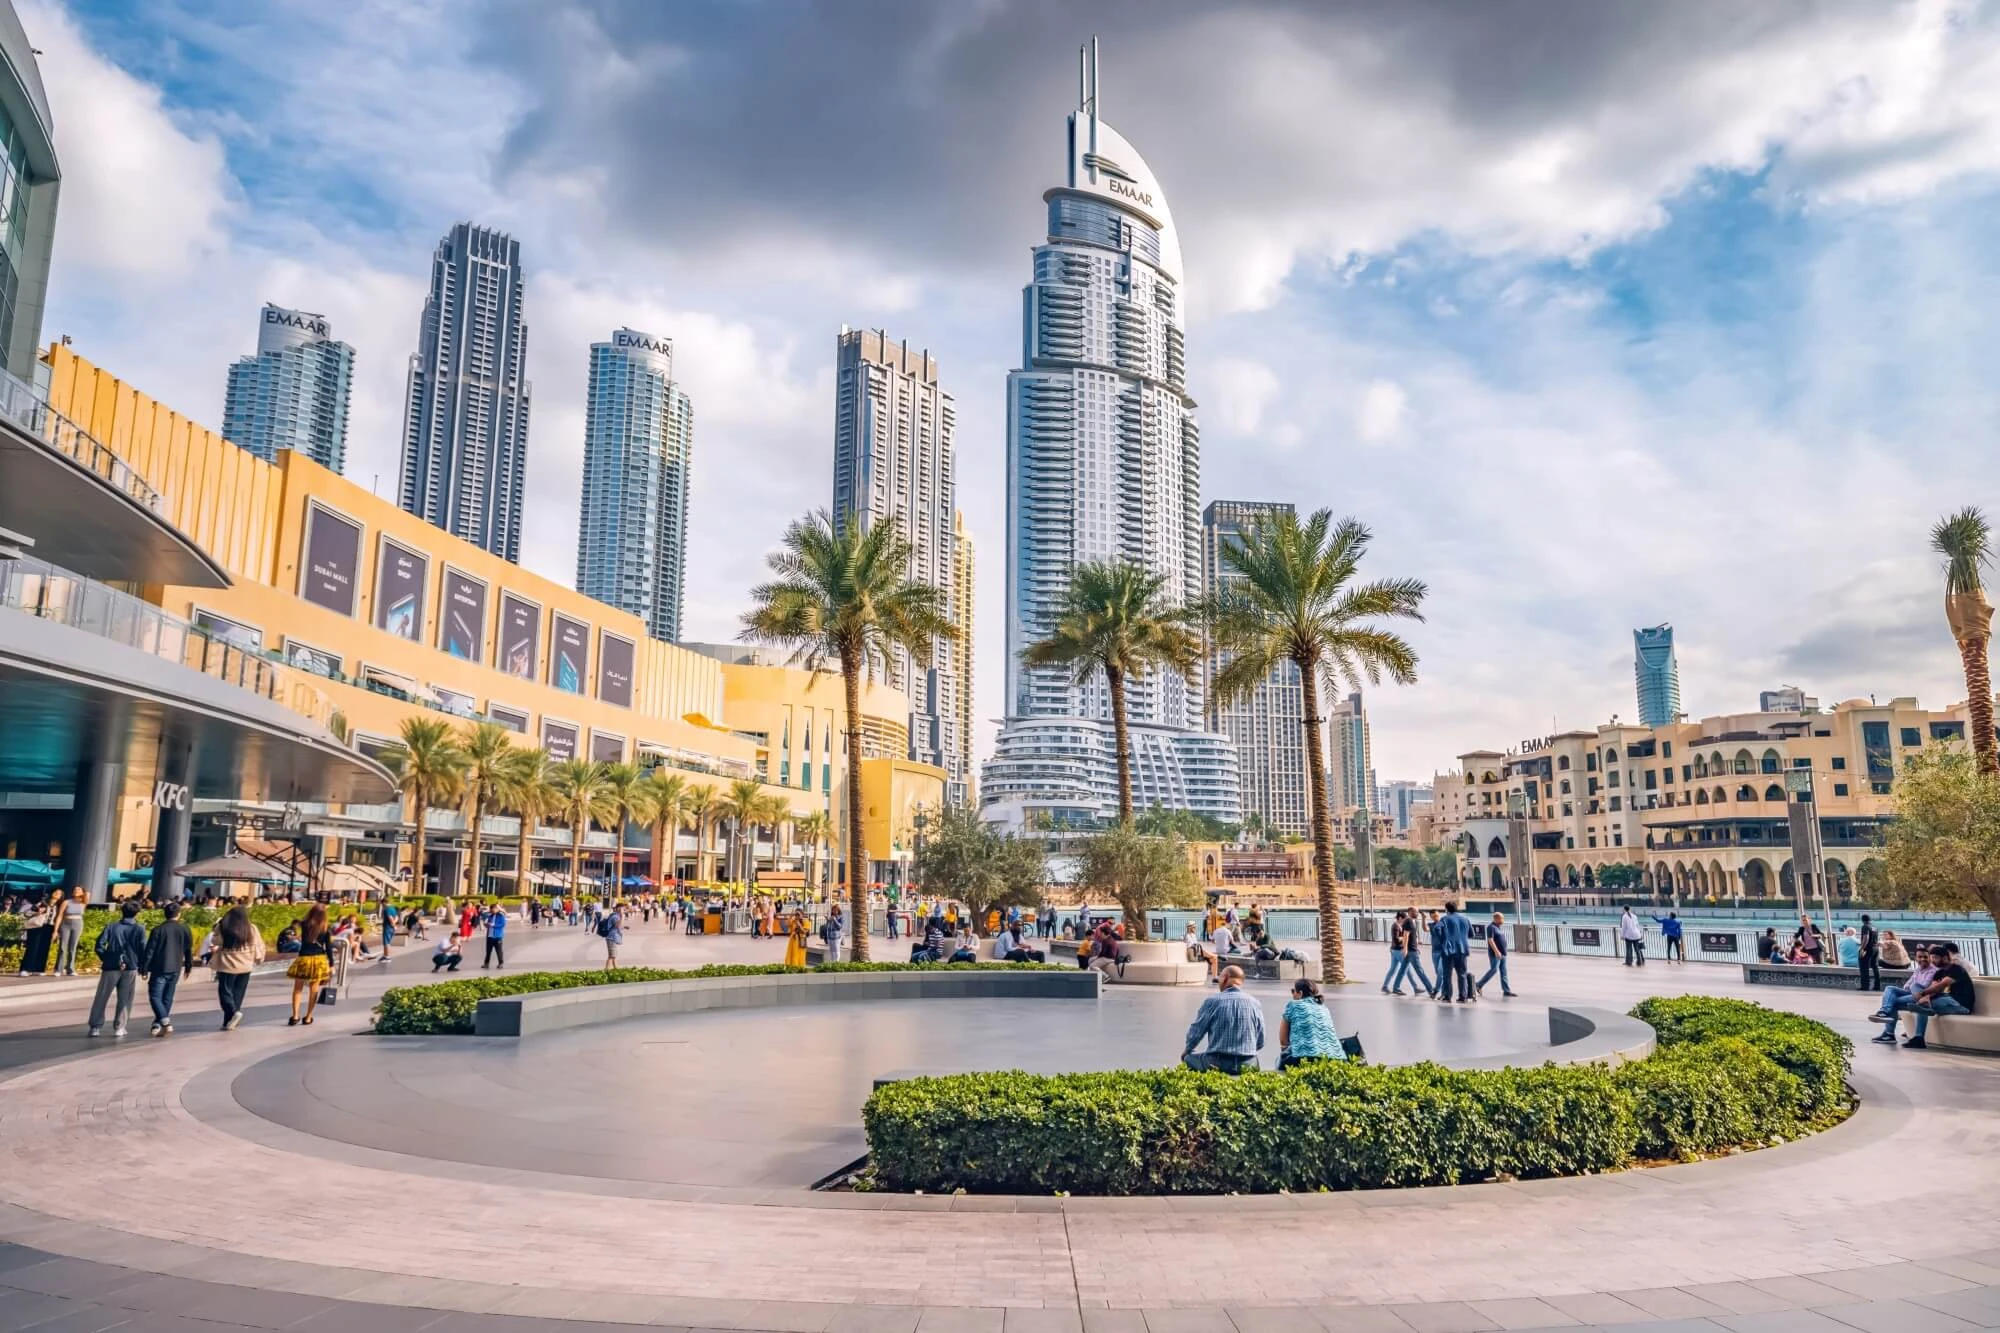 Todo lo que debe saber sobre el centro comercial de Dubai antes de su visita